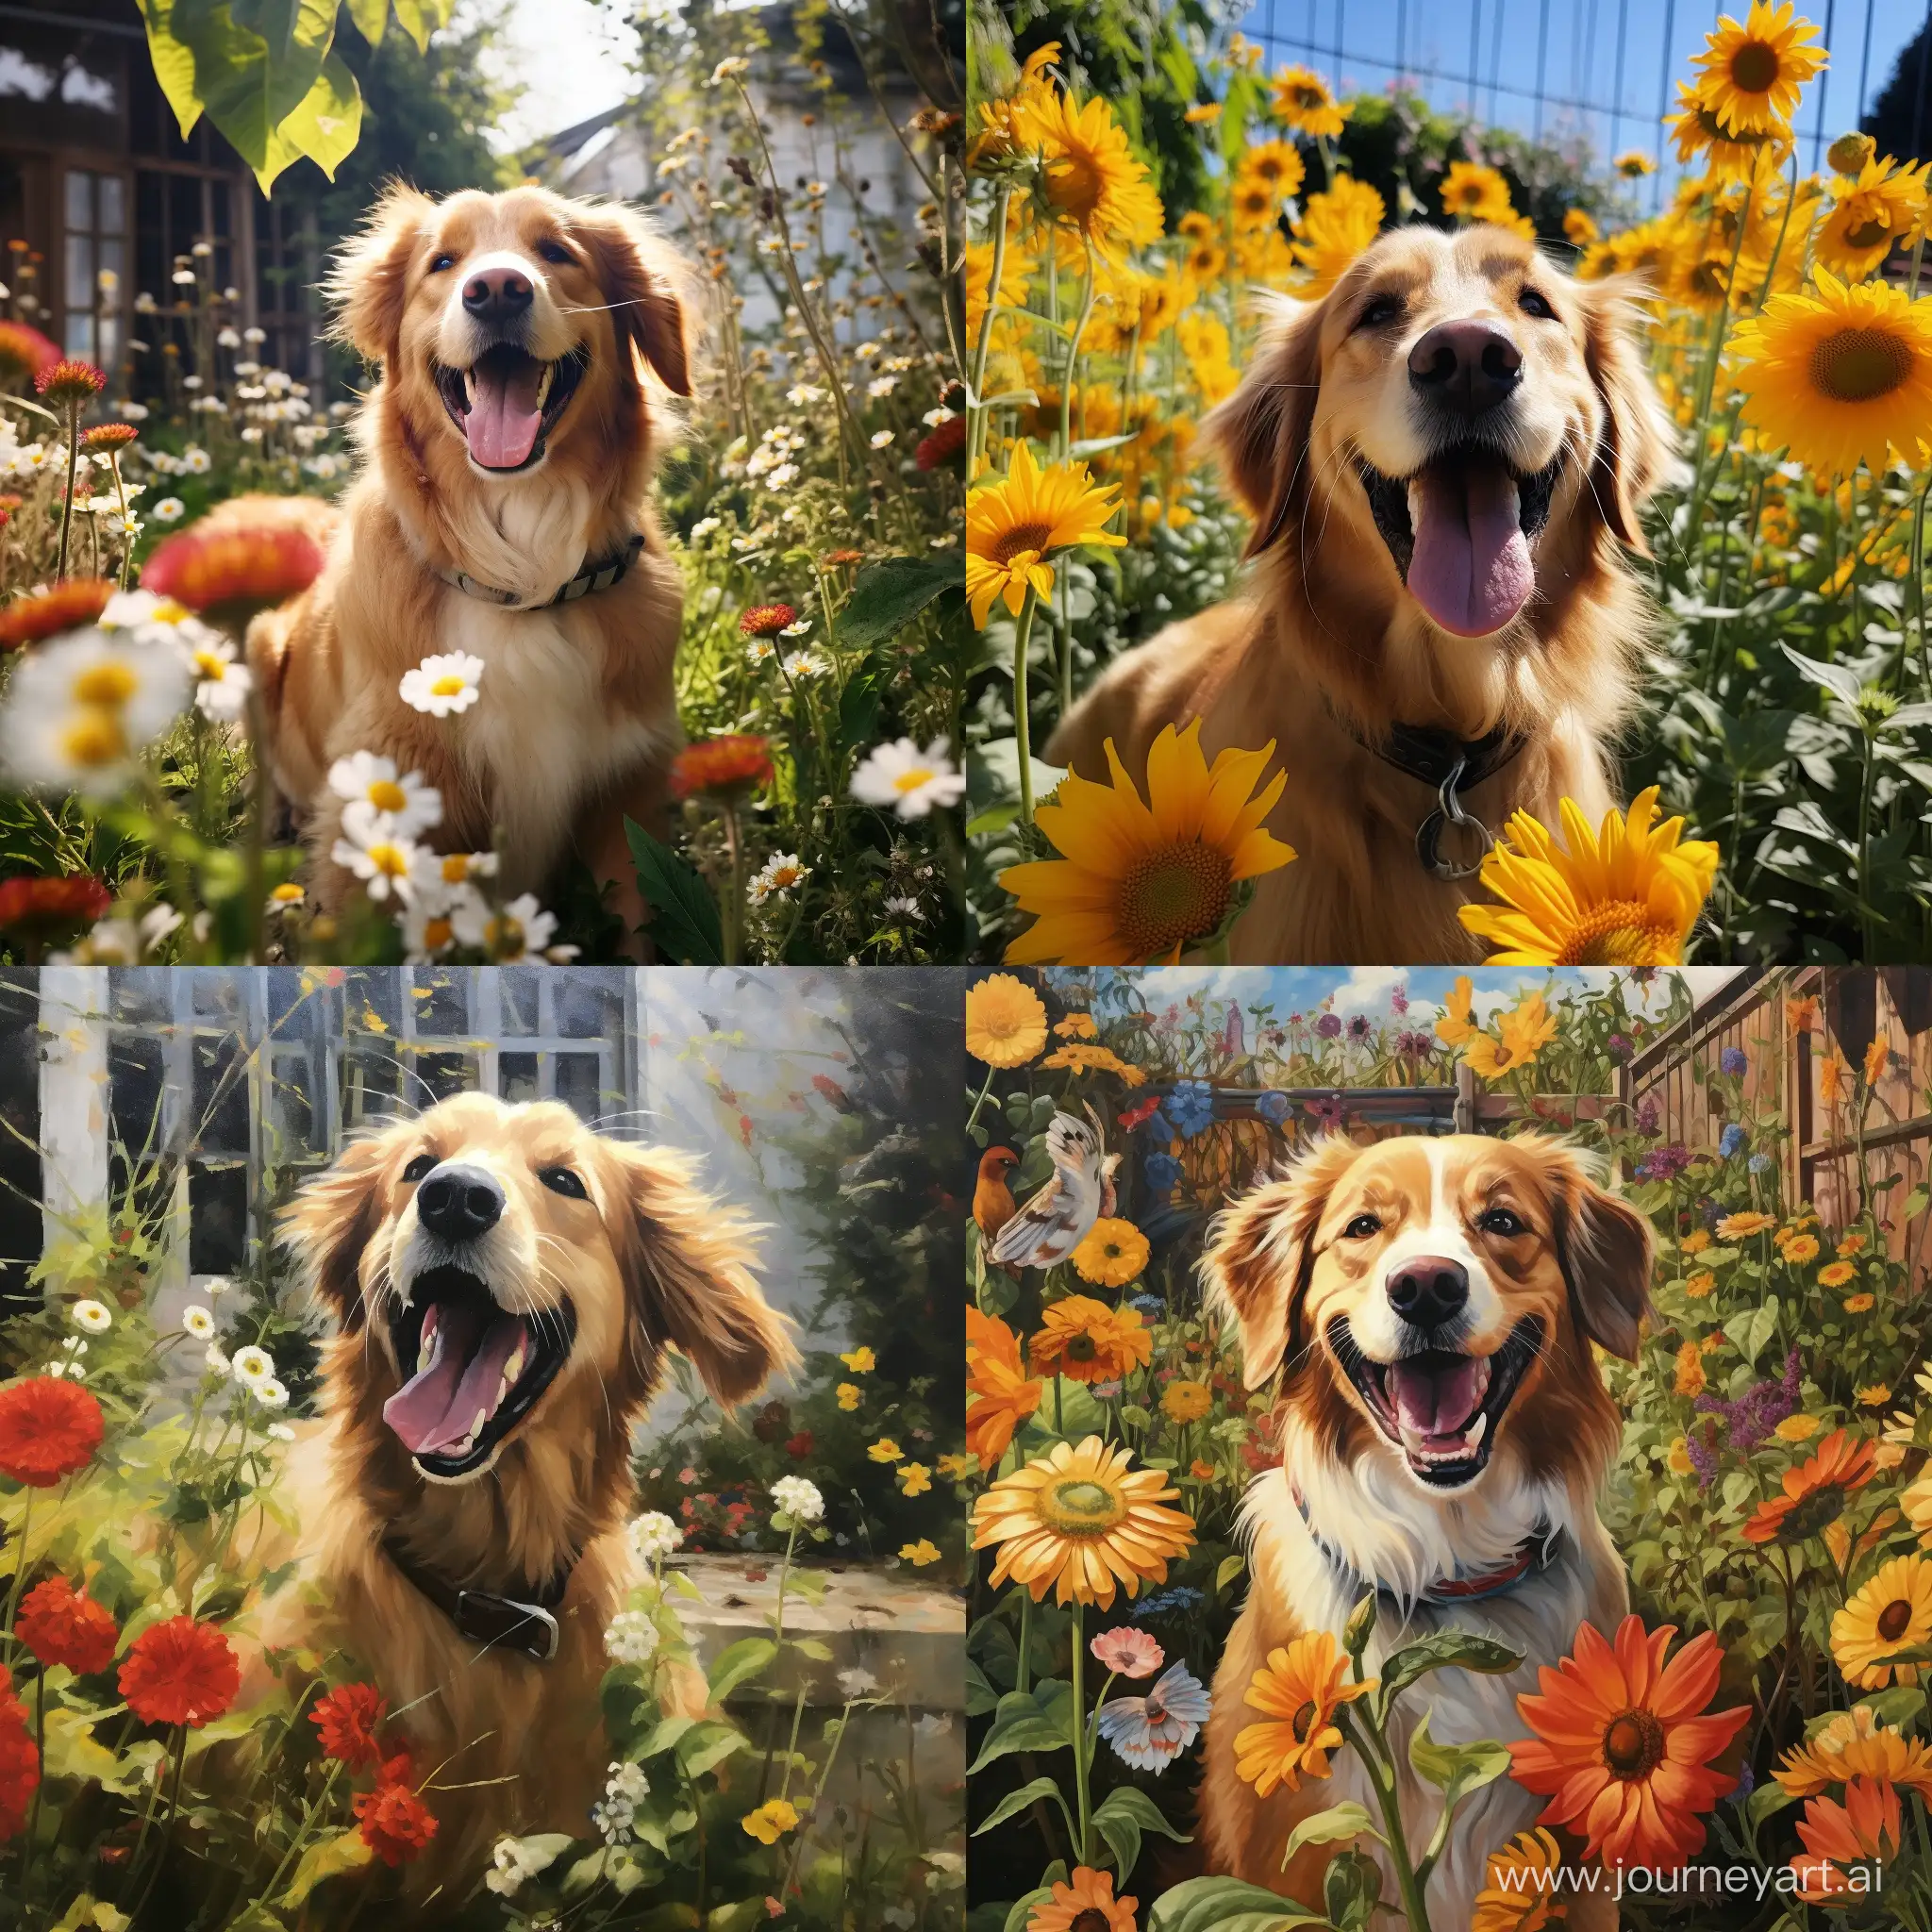 Joyful-Dog-Enjoying-Garden-Playtime